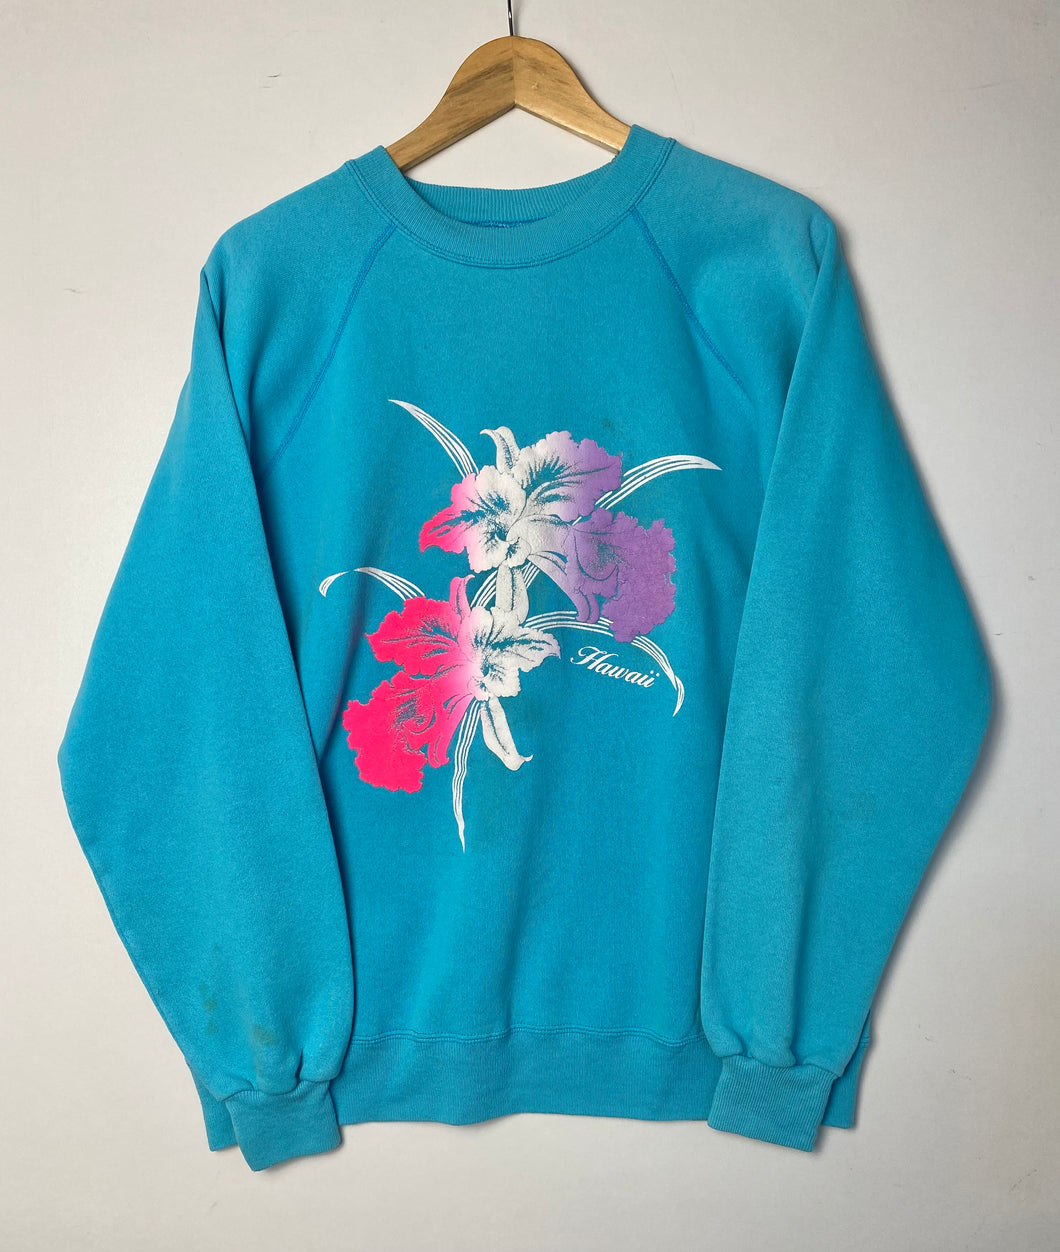 Printed ‘Hawaii’ sweatshirt (L)